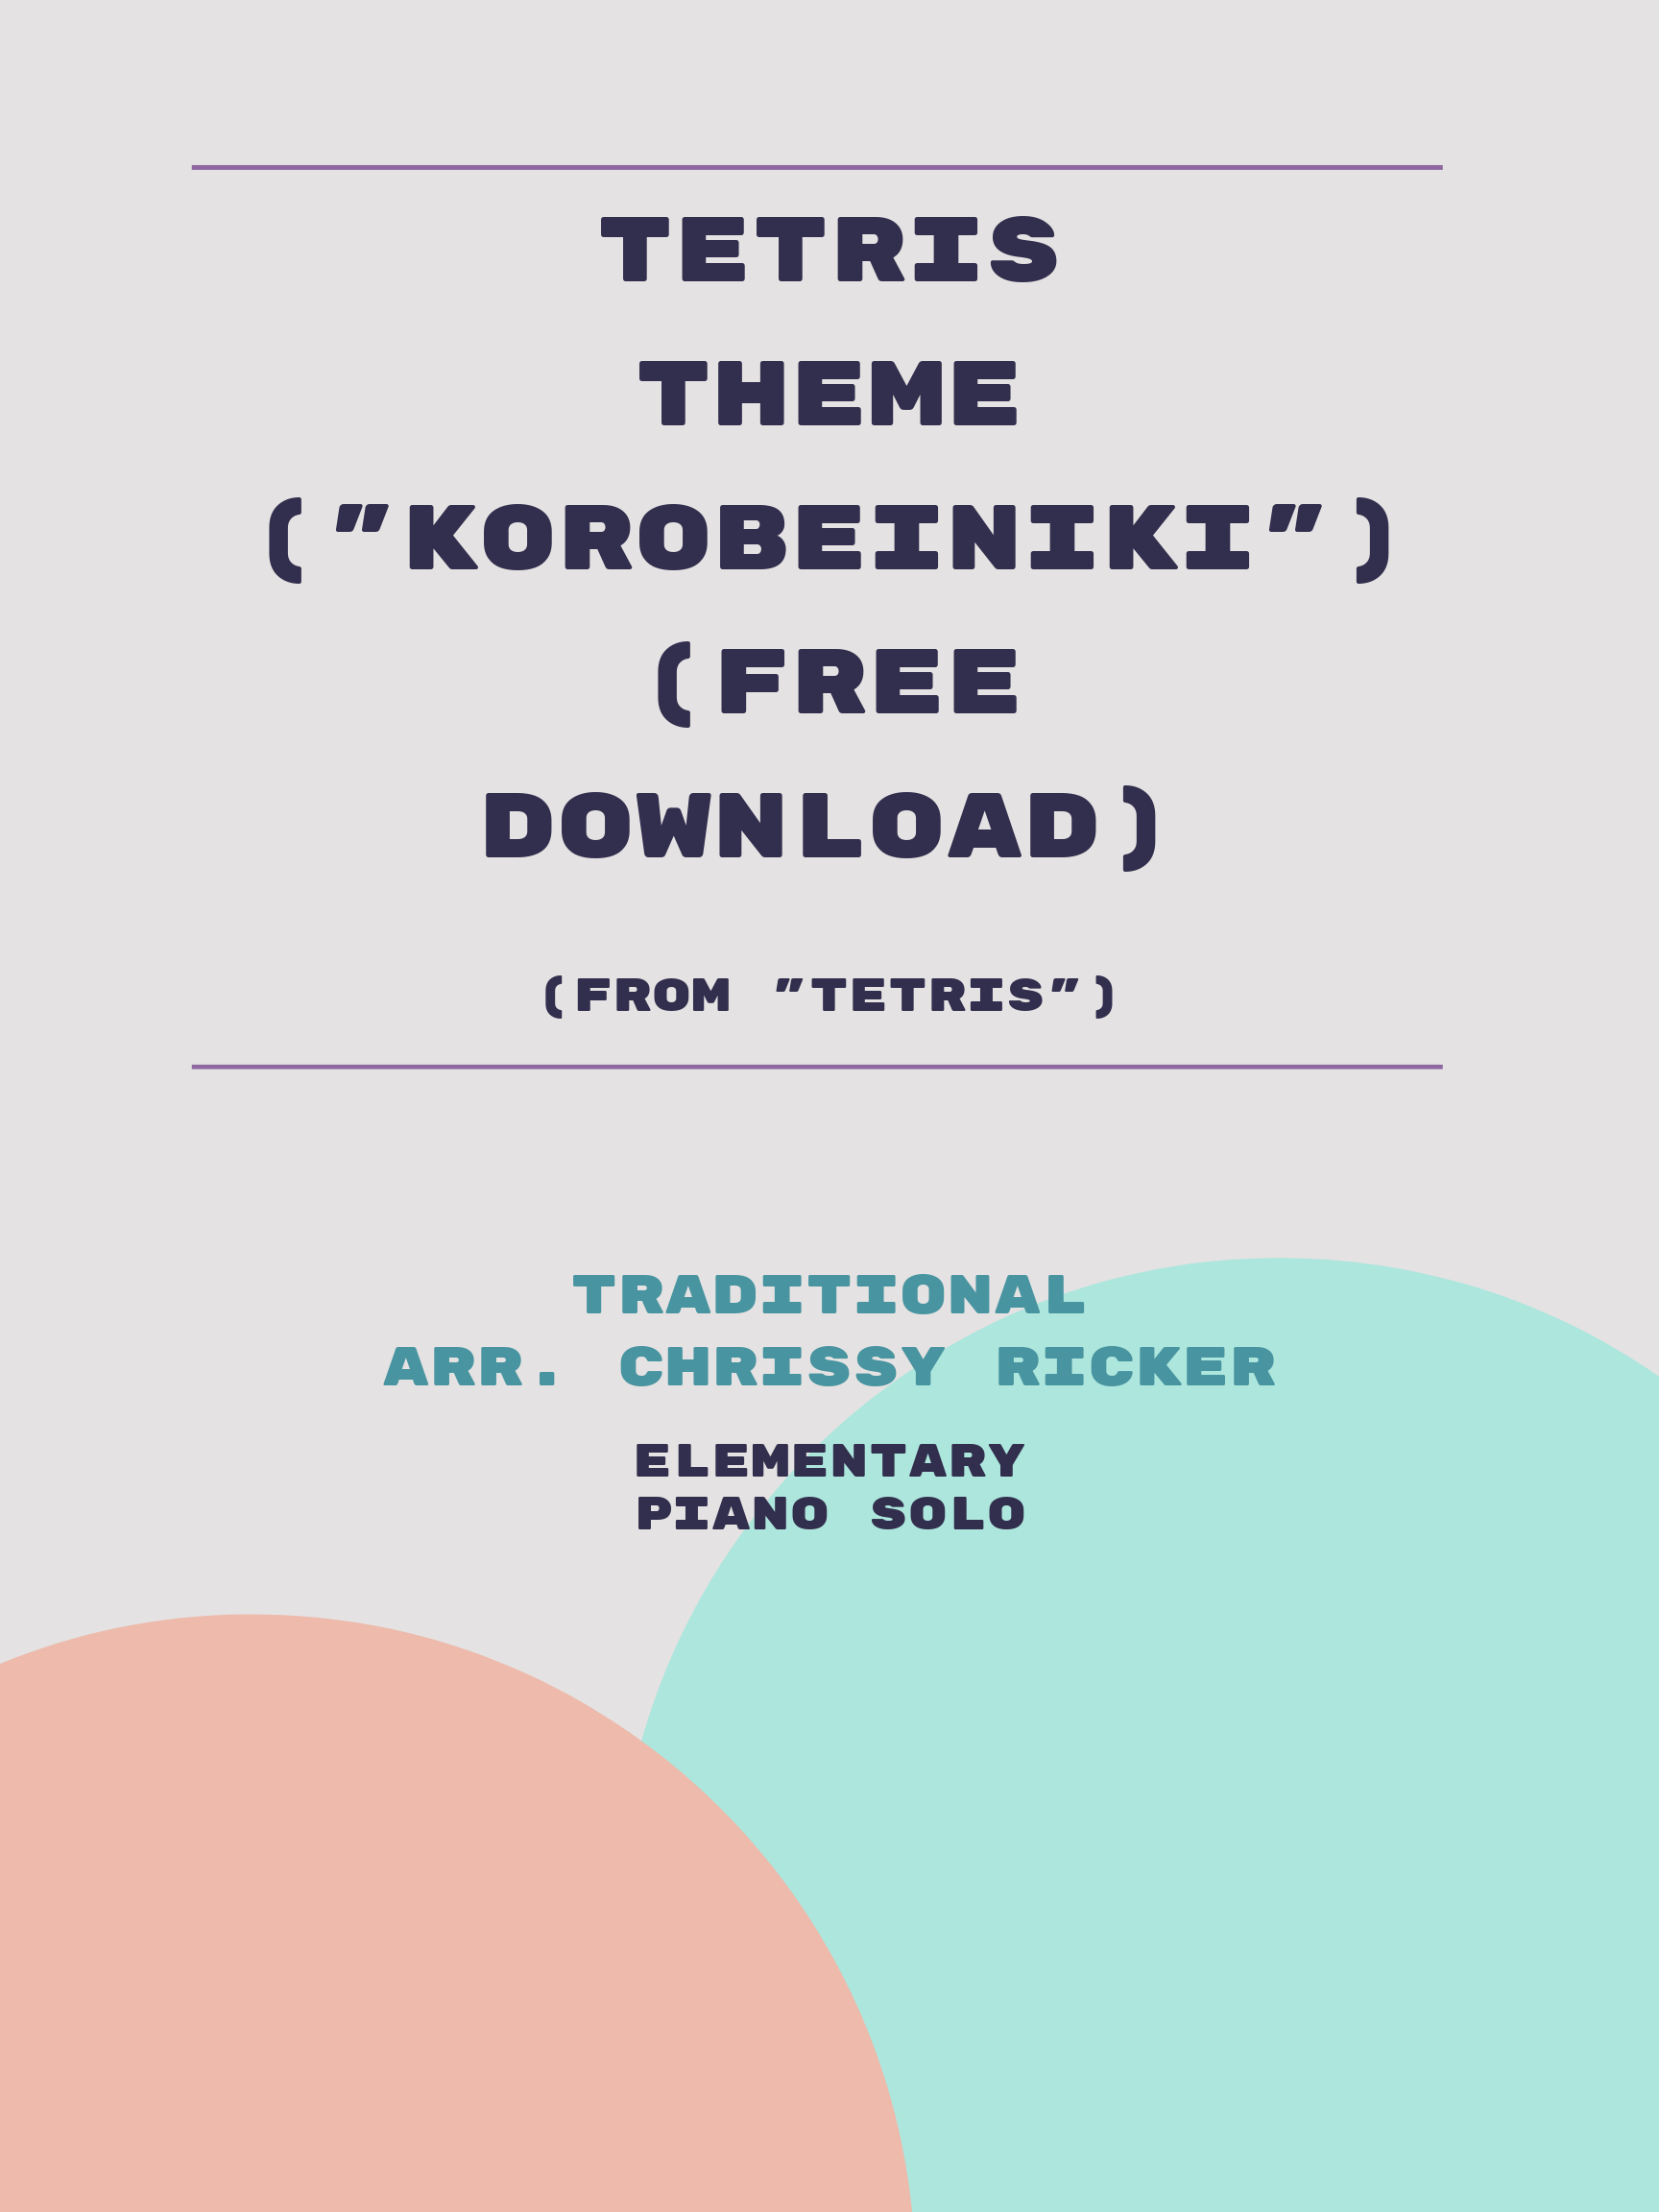 Tetris Theme ("Korobeiniki") (free download) Sample Page